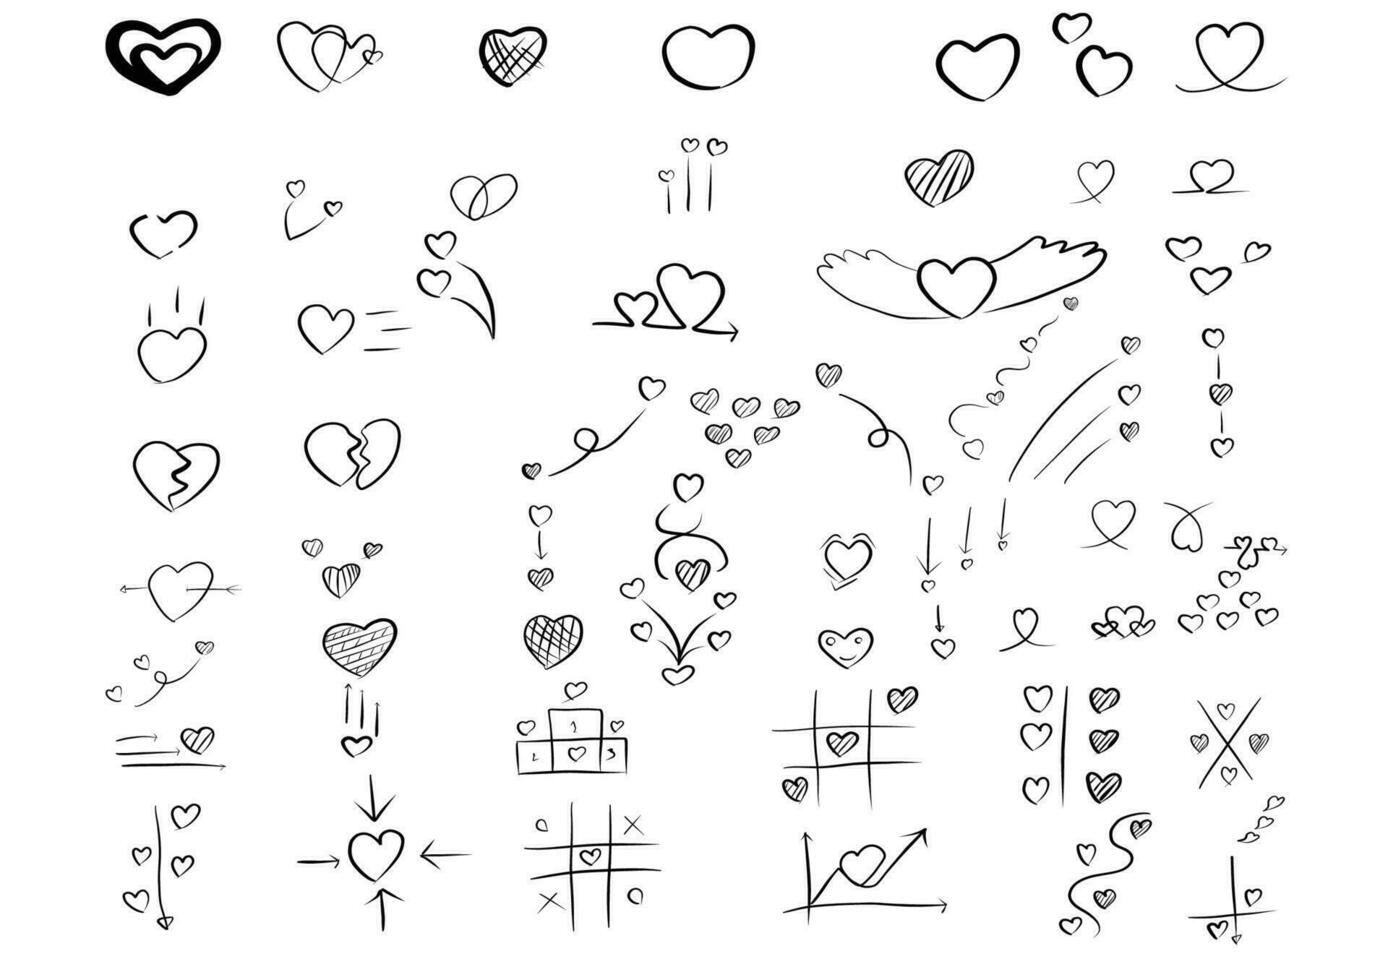 uppsättning av vektor hand drawning pilar.riktningar tecken eller symboler, pil, fyrverkeri, båge, svans, hjärta, set, linje ,kärlek,tal bubbla, pekare, vektor hand drawning pilar och riktning begrepp.